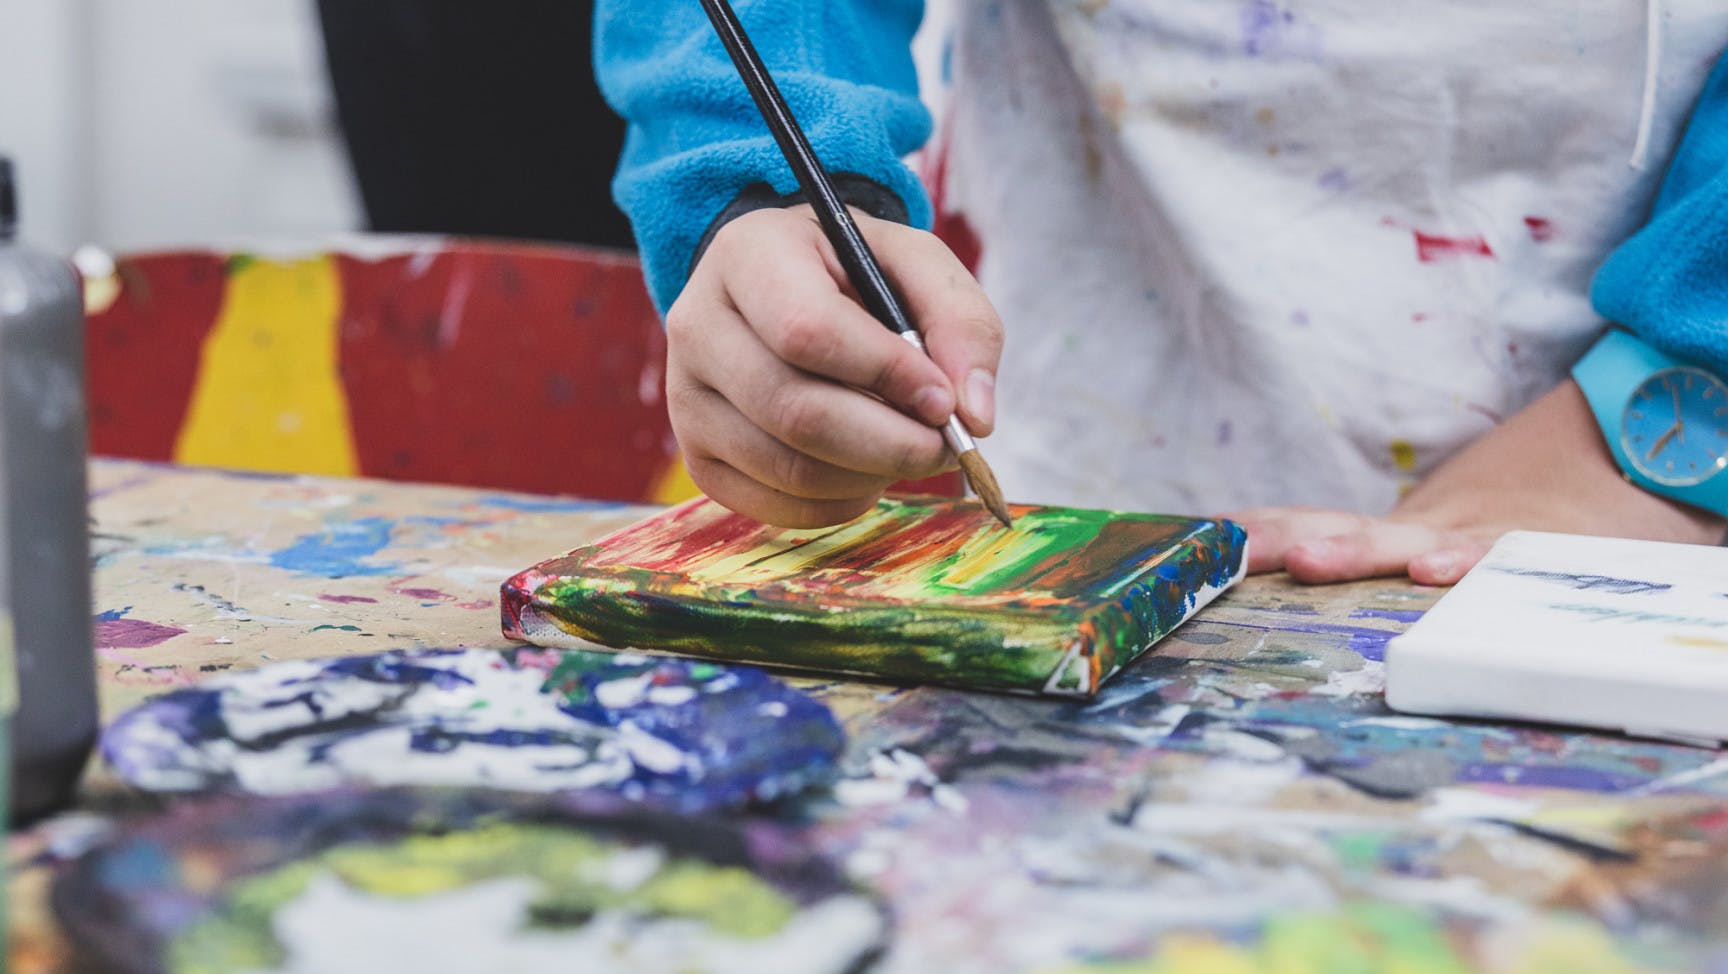 Hand einer jungen Person malt mit Pinsel ein Bild auf einem Werktisch.